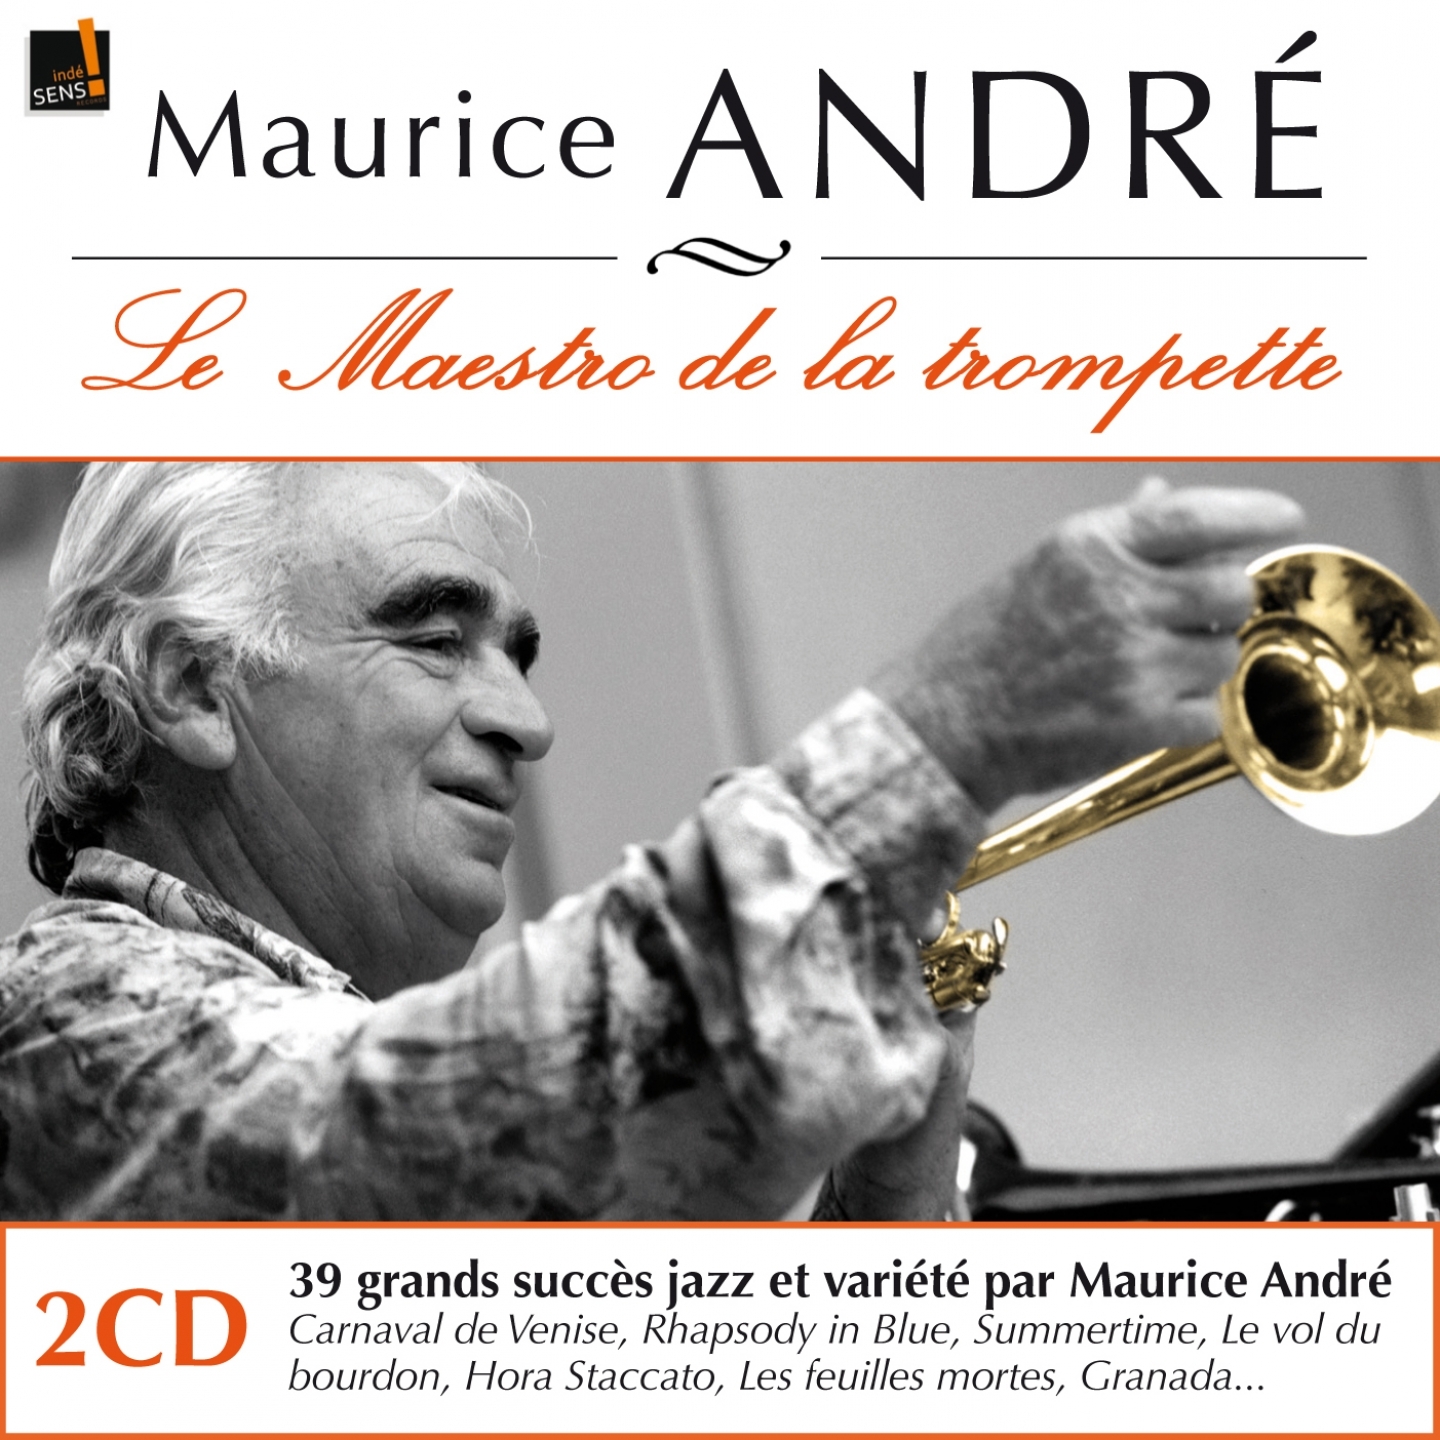 Maurice Andre : Ses premiers enregistrements ine dits Le maestro de la trompette  His First Recordings